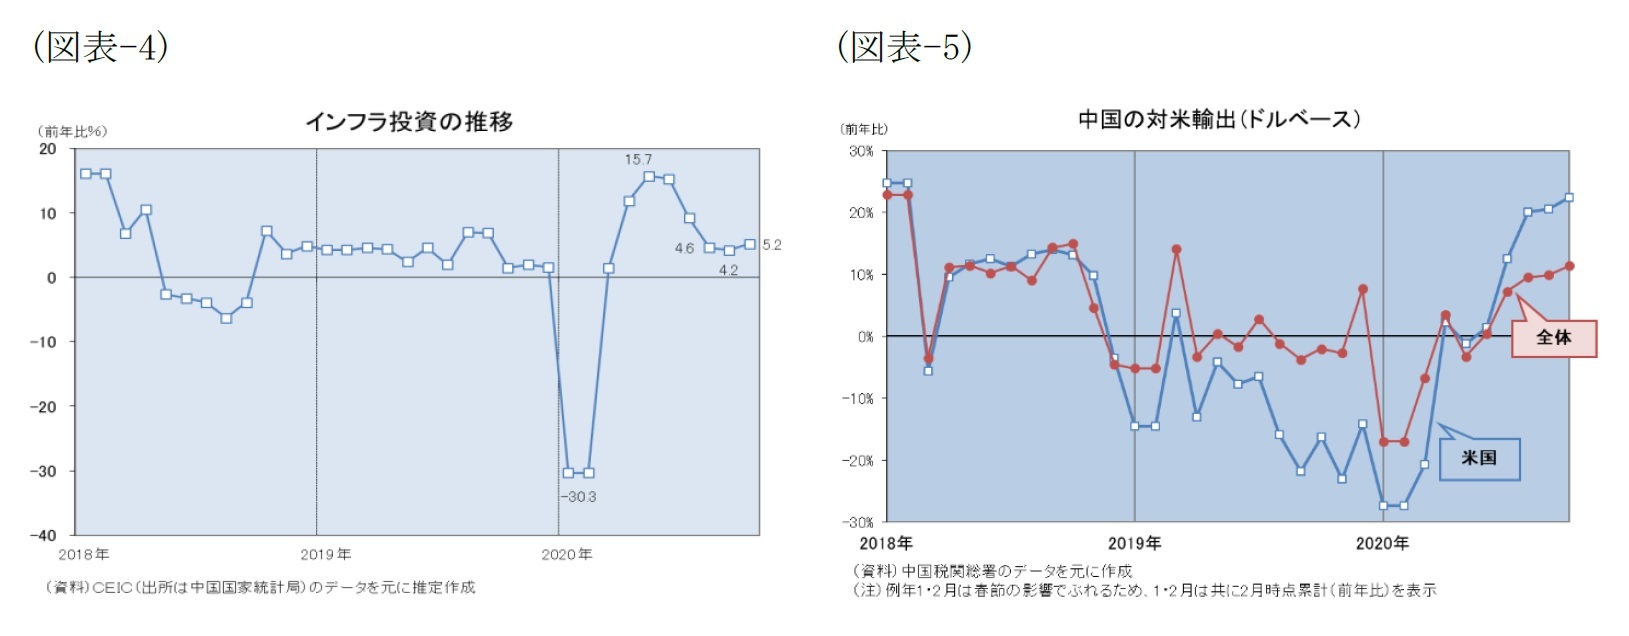 (図表-4)インフラ投資の推移/(図表-5)中国の対米輸出(ドルベース)